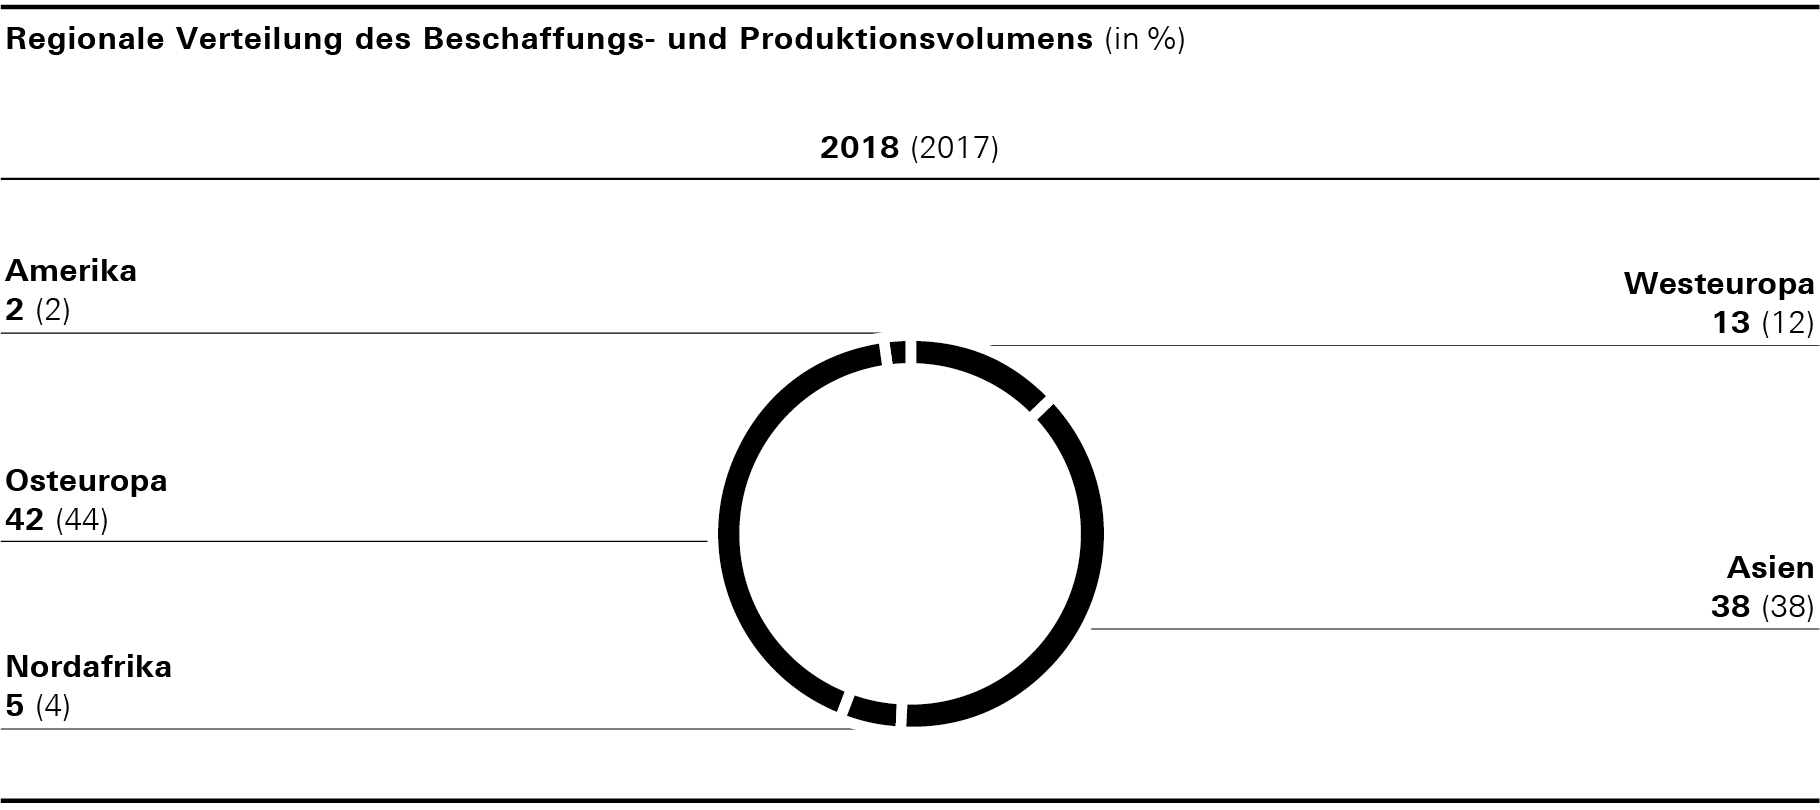 Regionale Verteilung des Beschaffungs- und Produktionsvolumens (Kreisdiagramm)